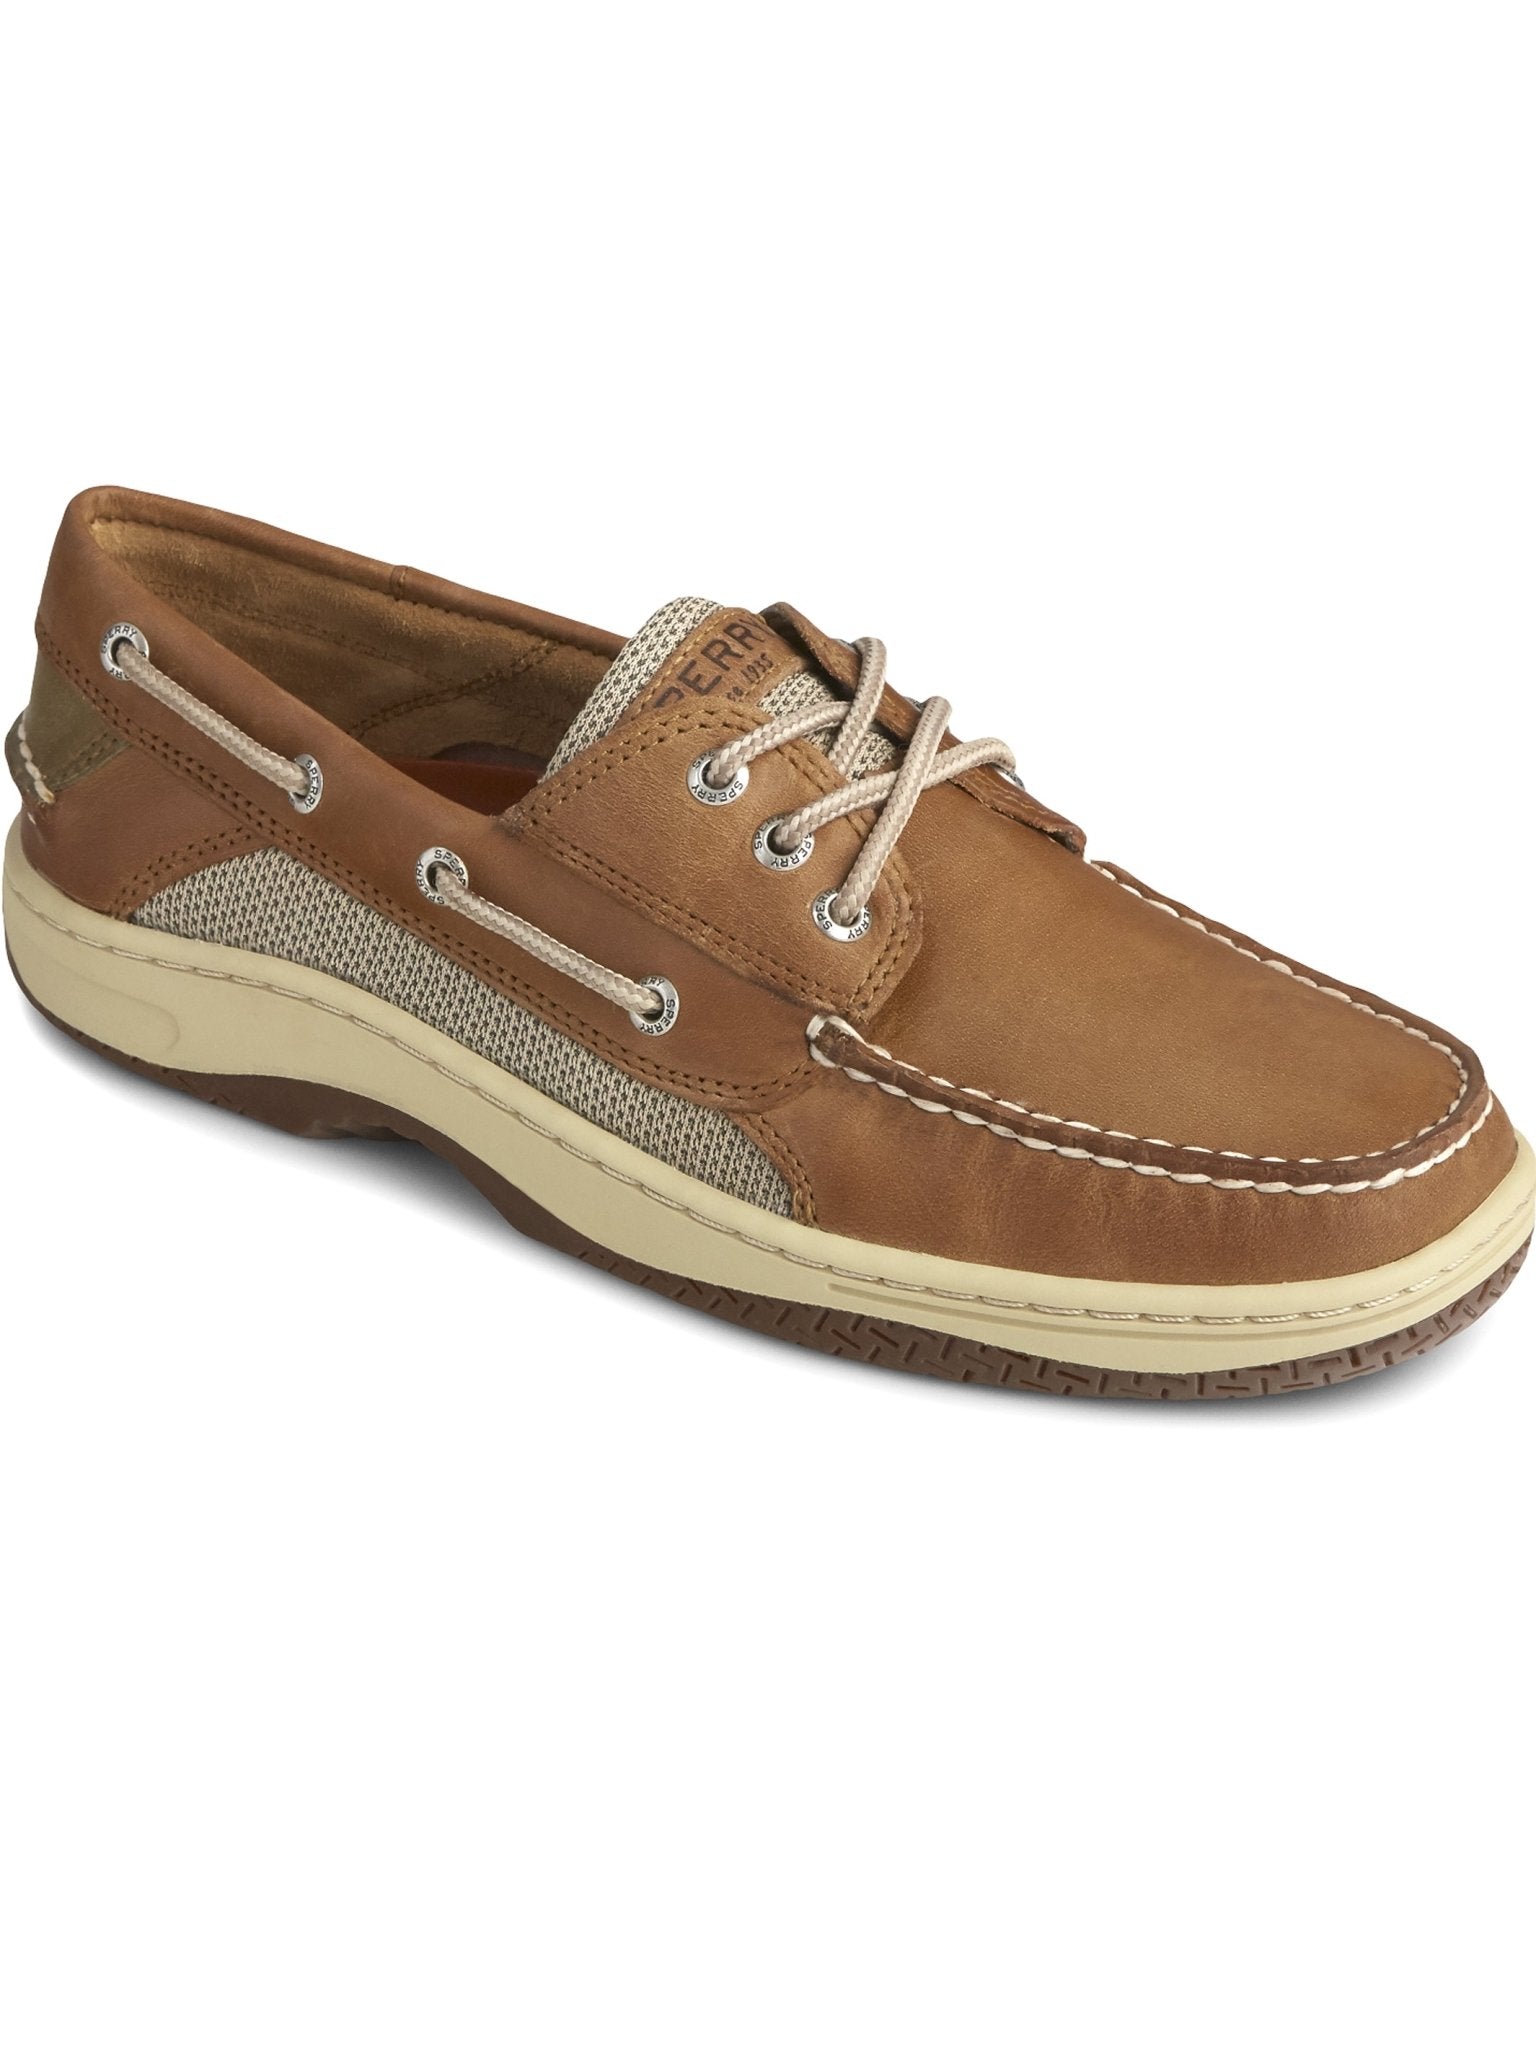 4elementsclothingSperrySperry - Men's boat shoe - Billfish 3-Eye Boat Shoe Dark Tan - Deck shoesShoes